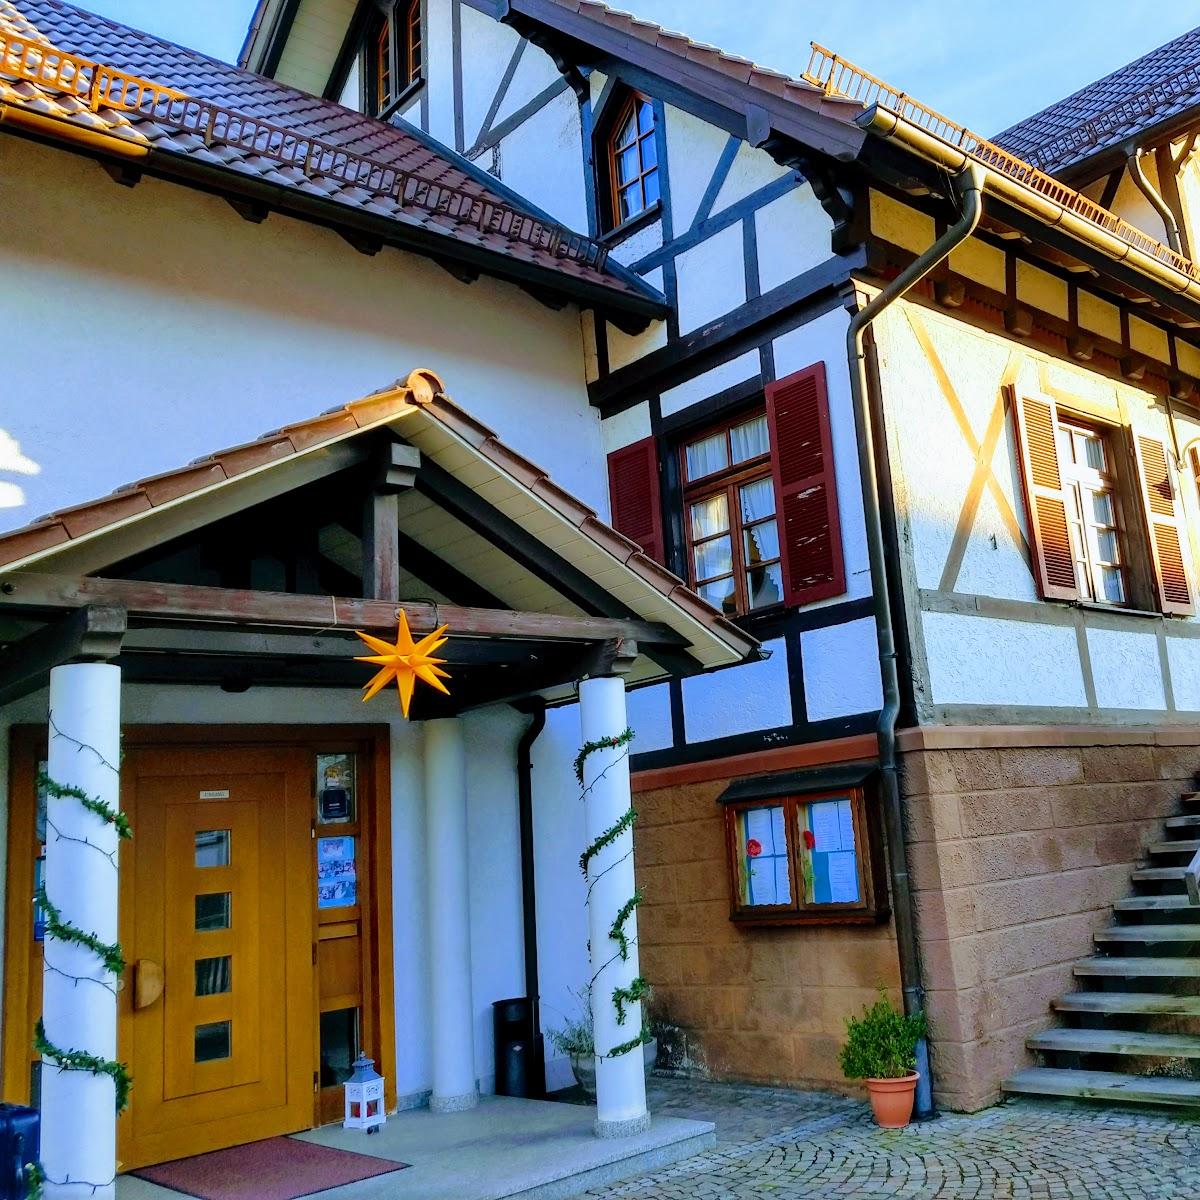 Restaurant "Hotel Gasthaus Adler" in Bühlertal